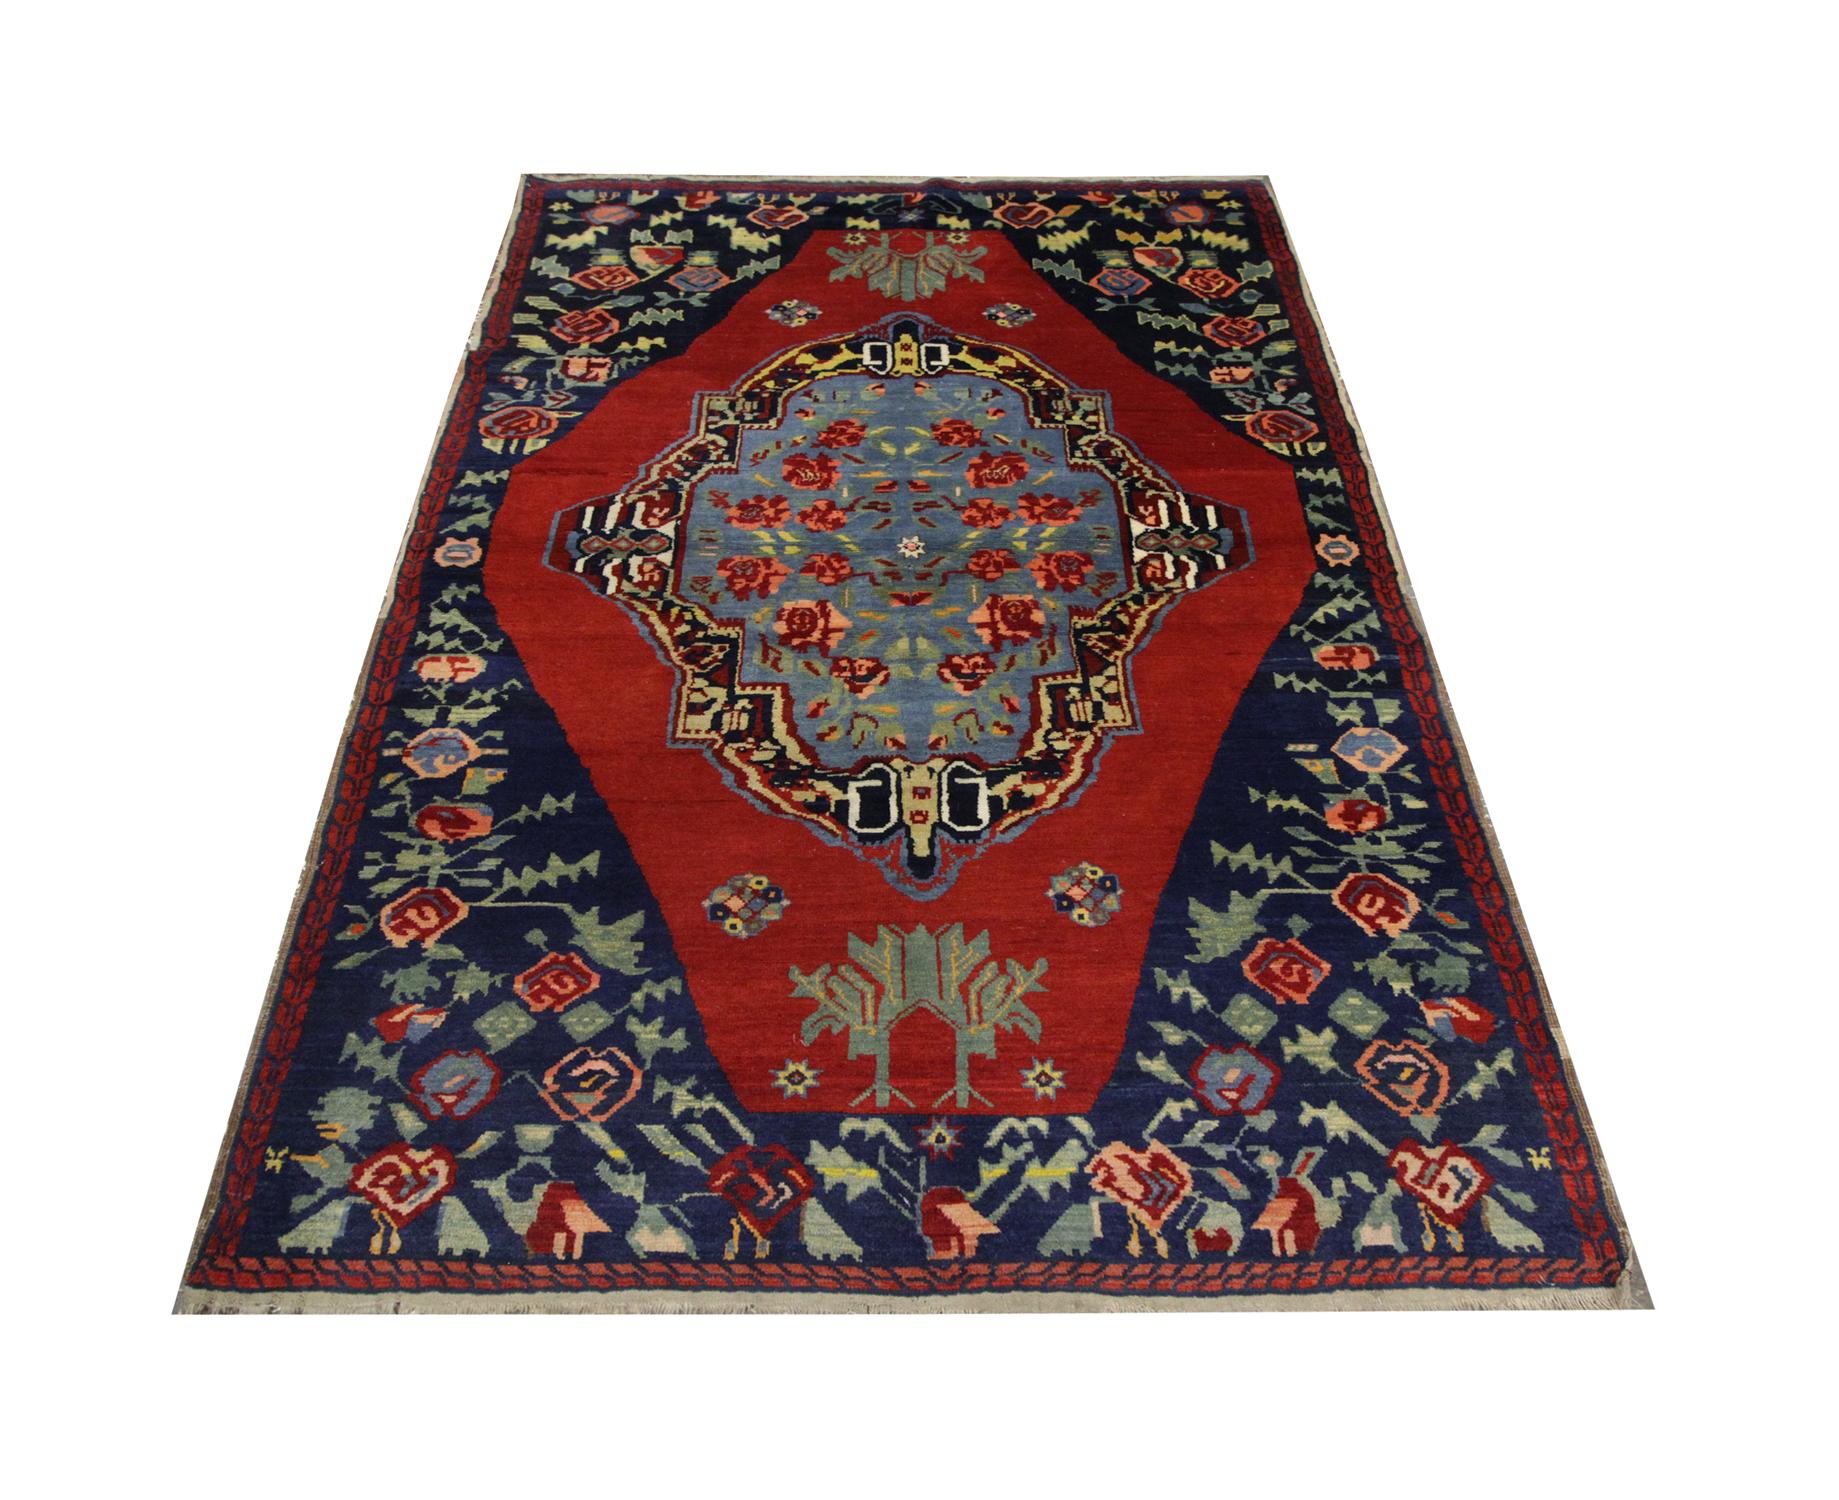 Un tapis oriental avec une belle piscine bleue remplit le médaillon central de roses flottantes. Ce tapis fait à la main est entouré d'un fond rouge profond et de motifs floraux supplémentaires dans la bordure.
Ce tapis Karabagh de haute qualité